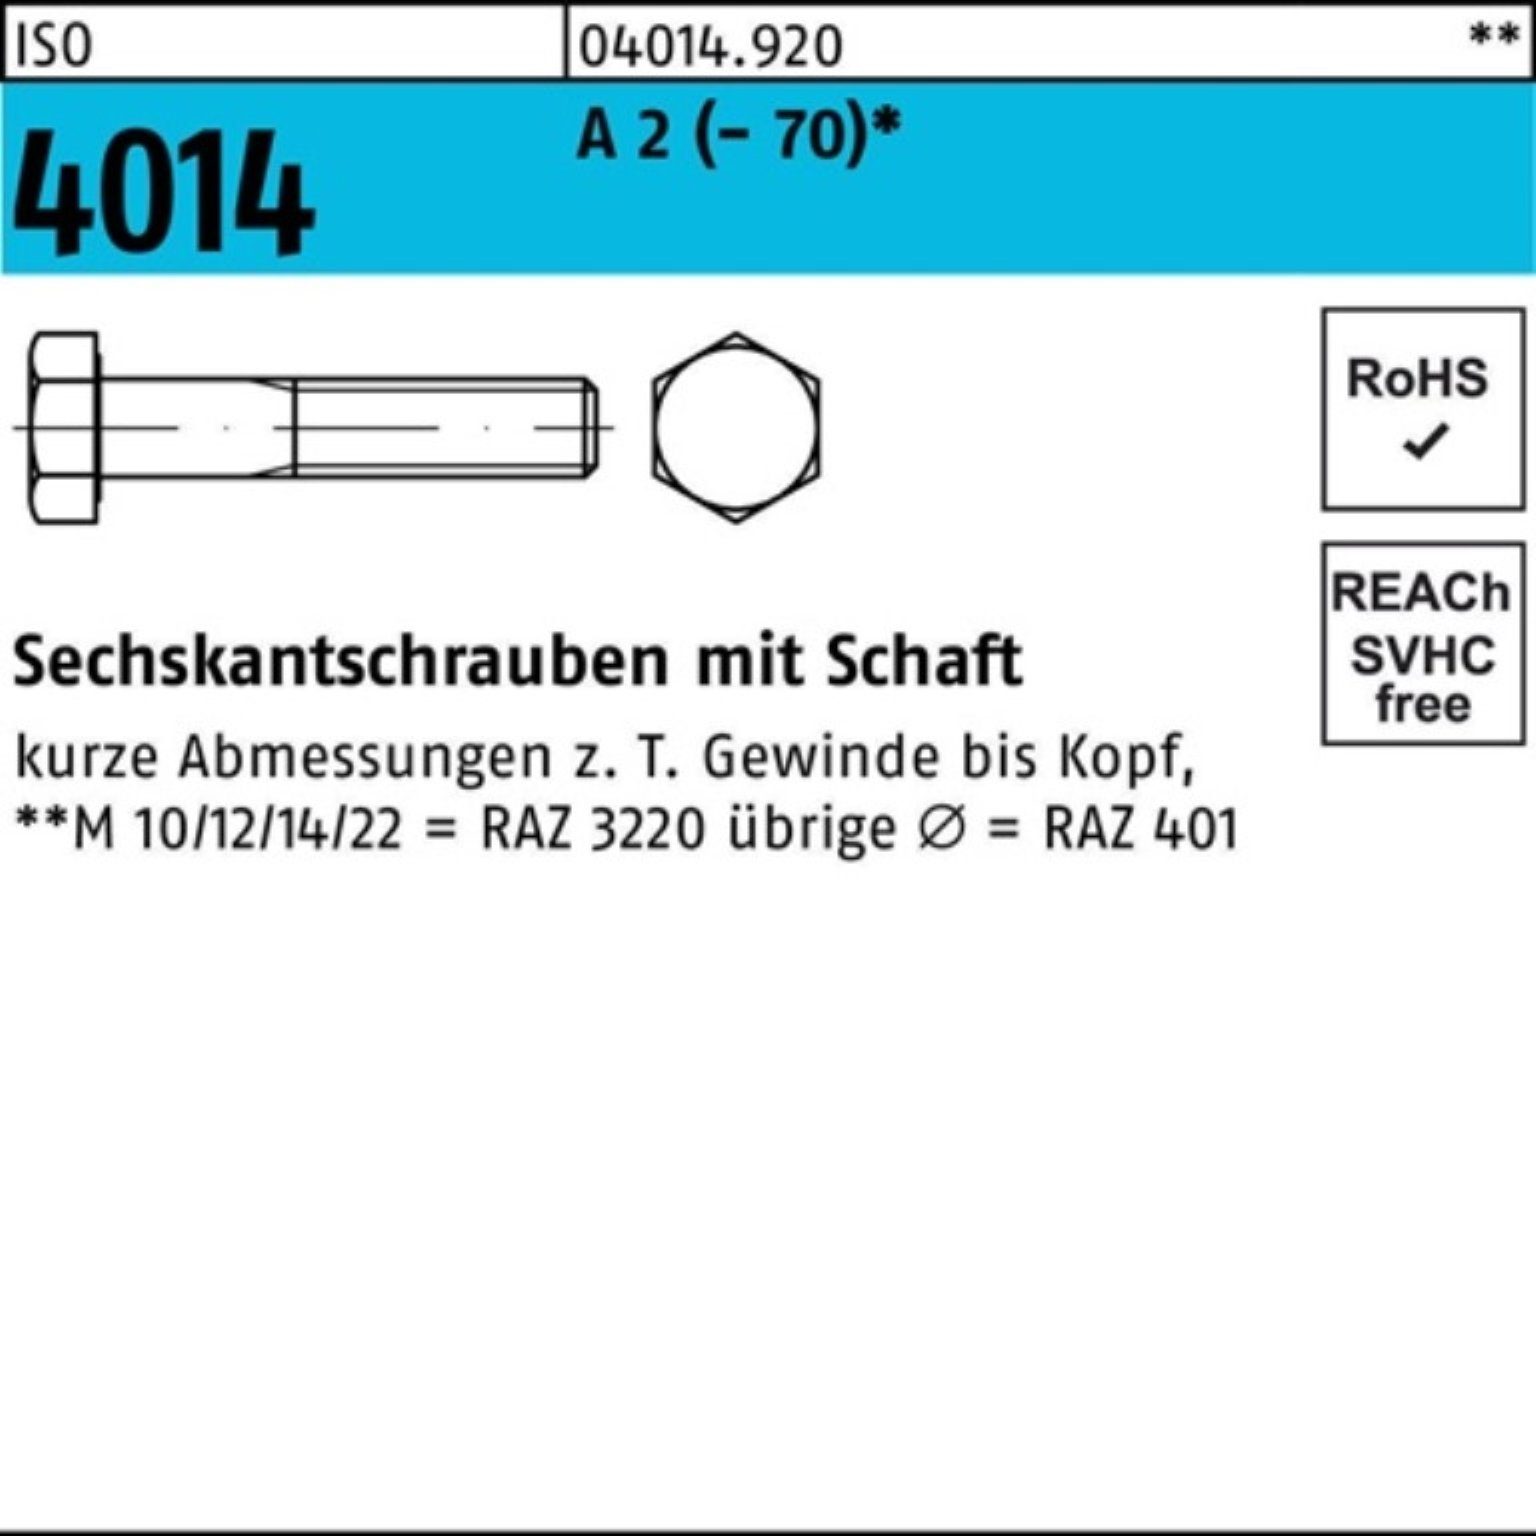 Bufab Sechskantschraube 100er Pack Sechskantschraube ISO 4014 Schaft M8x 75 A 2 (70) 100 St